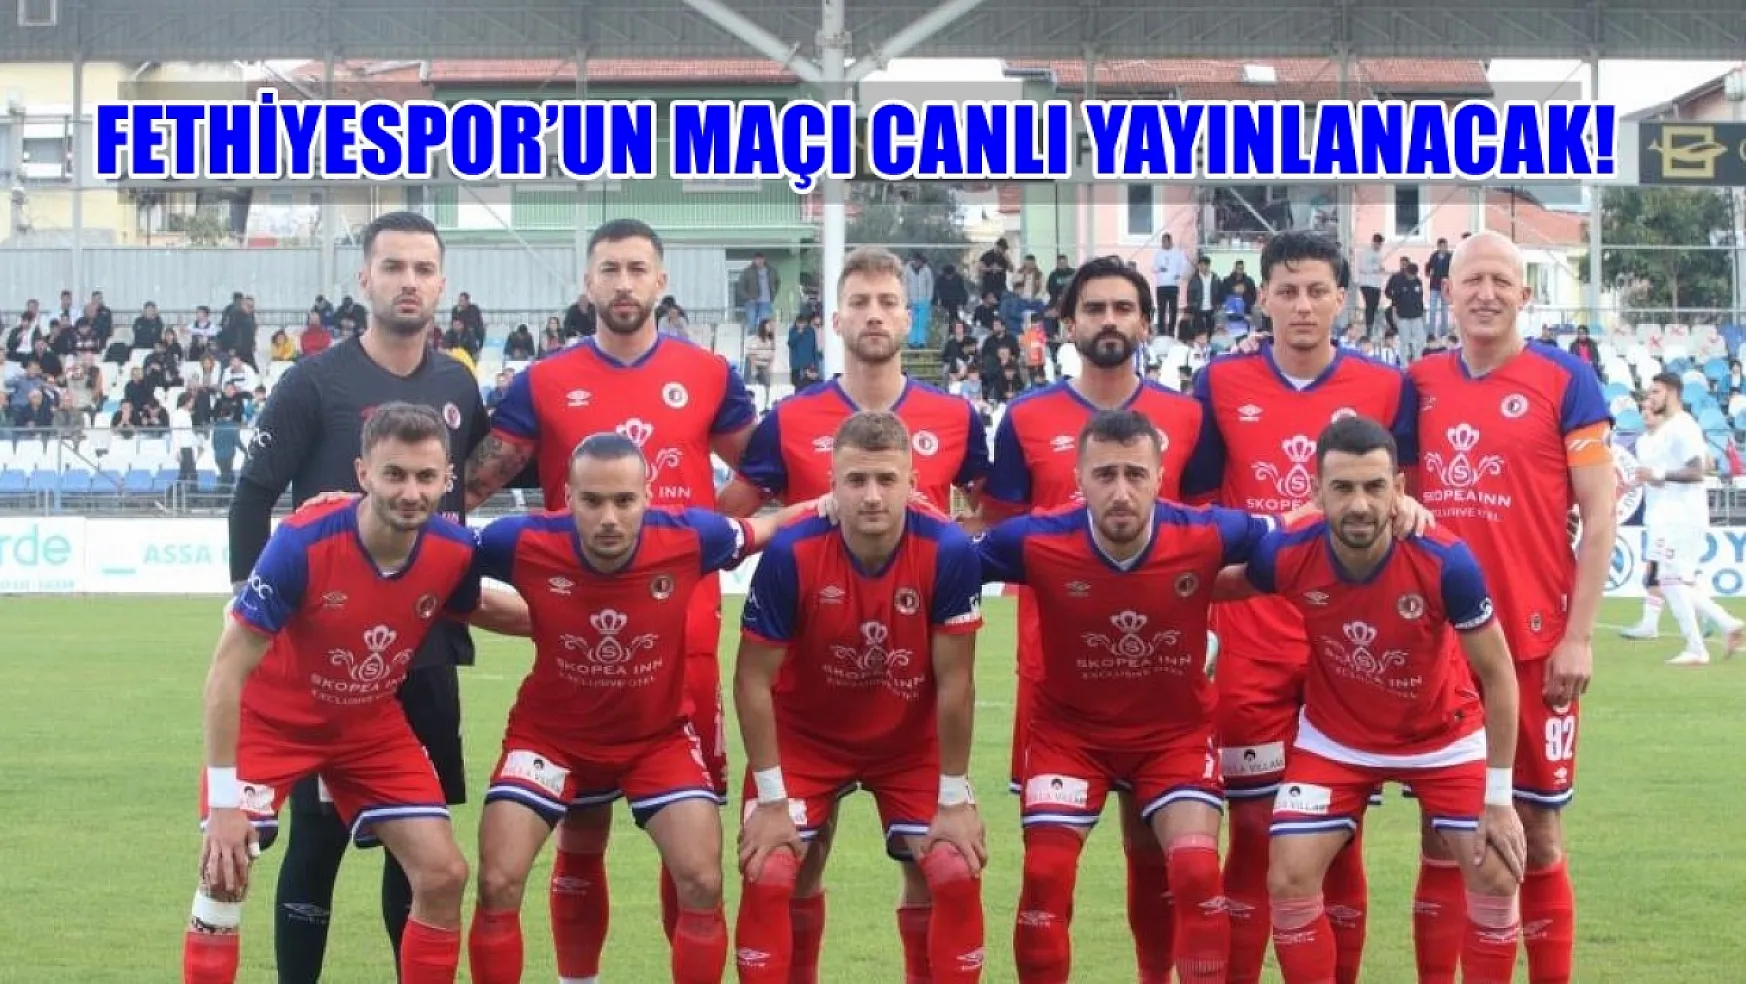 Fethiyespor taraftarları bu haber sizi ilgilendiriyor! Fethiyespor'un maçı canlı yayınlanacak!